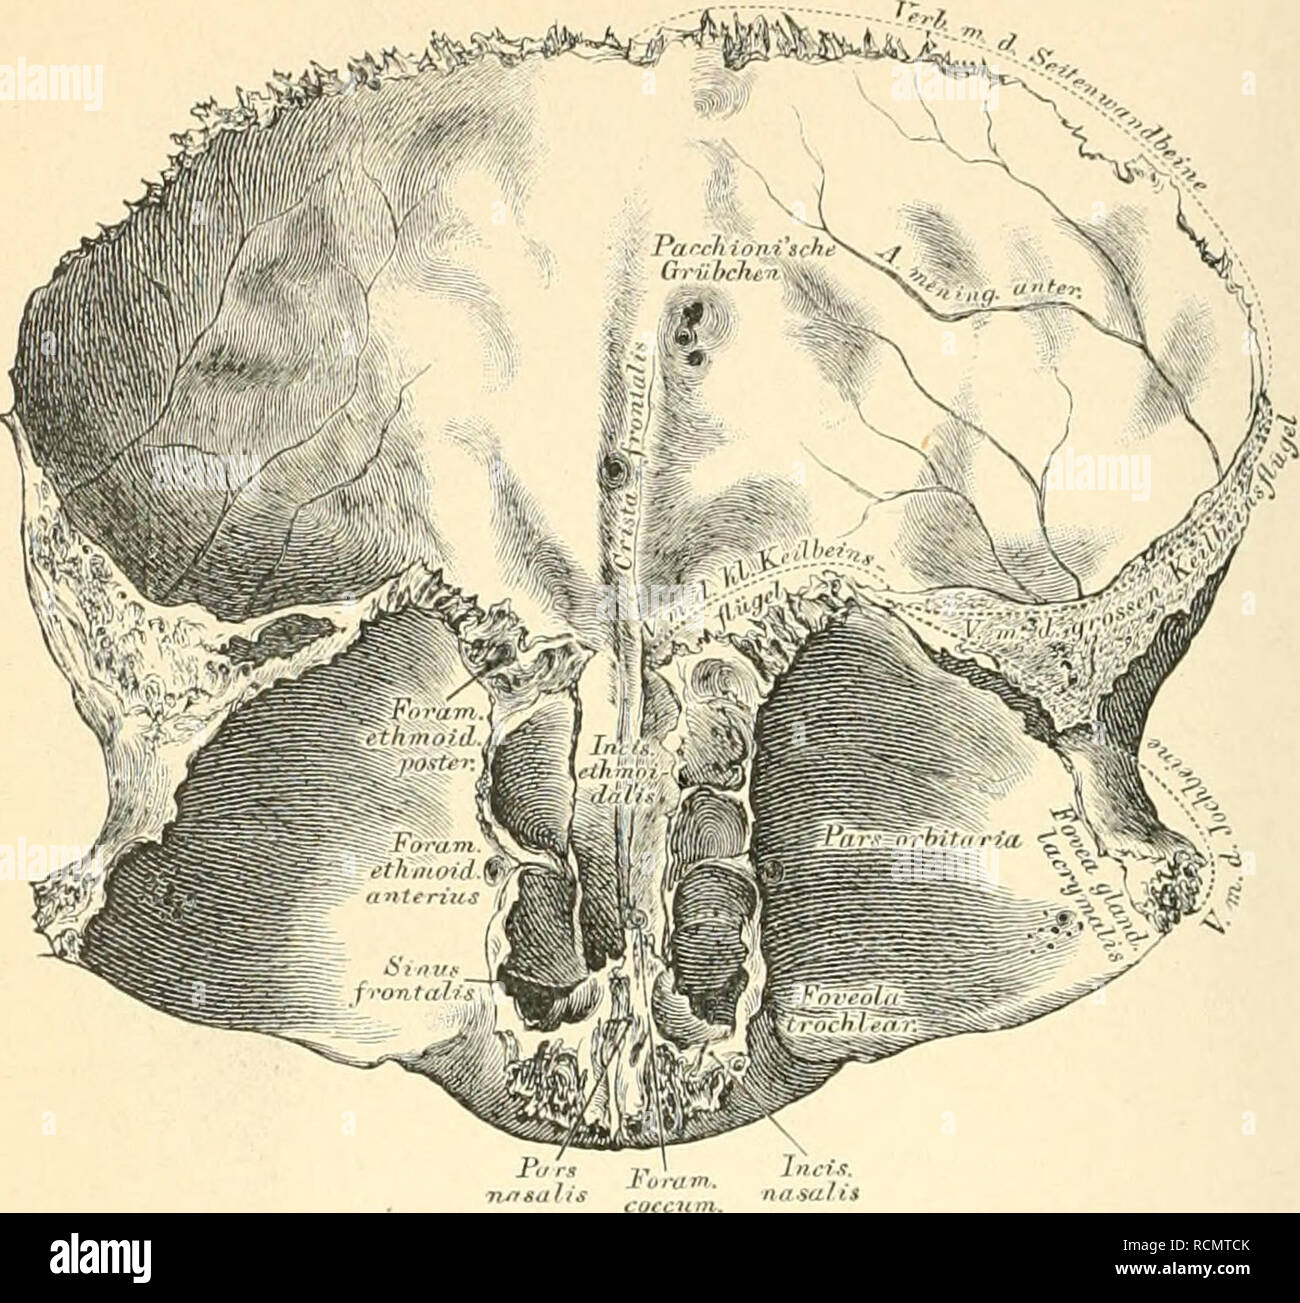 . Die descriptive und topographische Anatomie des Menschen. Anatomy. 12 Knochen des Schädels.. 10. Stirnbein, Os frontale, von hinten. Stirntheil. Die hintere Flüche durch die Crista frontalis in 2 Hälften getheilt; zu beiden Seiten derselben Pacchioni'sche Grübchen. Der Rand des Stirntheiles, Marrjo coronalis, beginnt hinter dem Processus zygomaticus mit einer dreieckigen, zackigen Fläche. Die beiden Augenhohlentheile werden durch den Siebbeinaus- schnitt, Incisura ethmoidalis, von einander getrennt; an der unteren Fläche gegen den Proc. zygomaticus die Thränendrüsengrube, Fovea glandulae lac Stock Photo